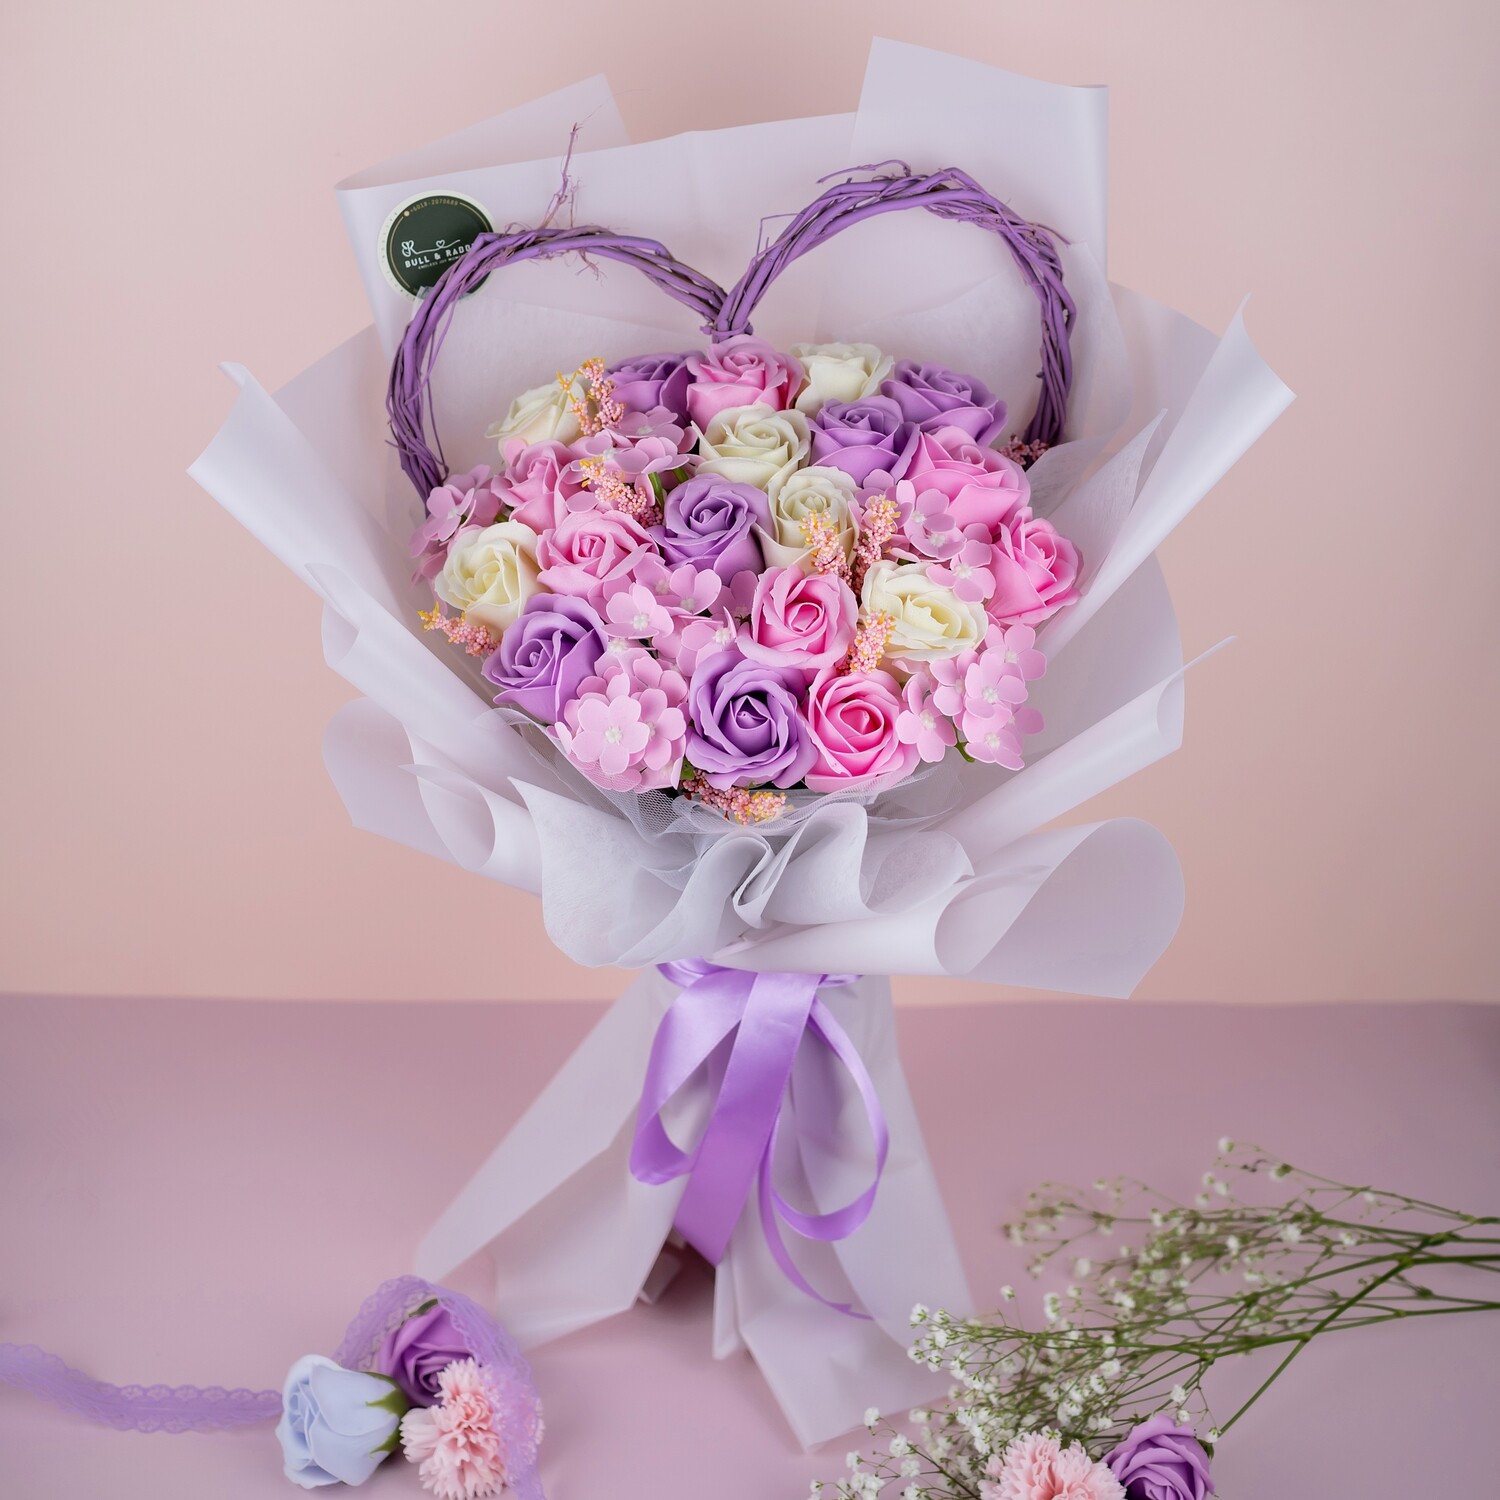 Heartie Bouquet (Soap Flower) (By: Bull & Rabbit from Kuchai Lama)